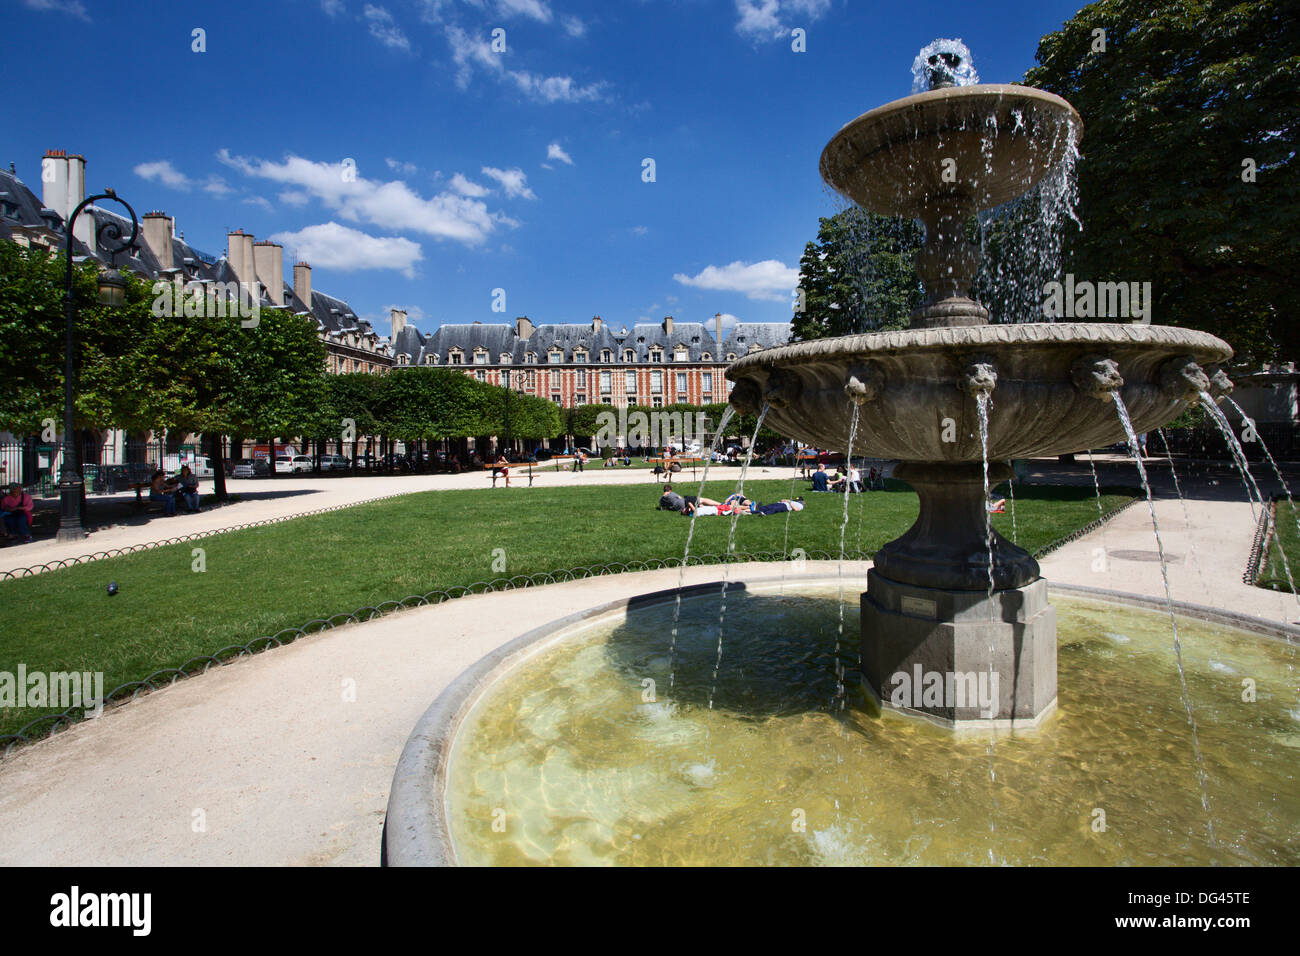 Fontaine de la Place des Vosges dans le Marais, Paris, France, Europe Banque D'Images